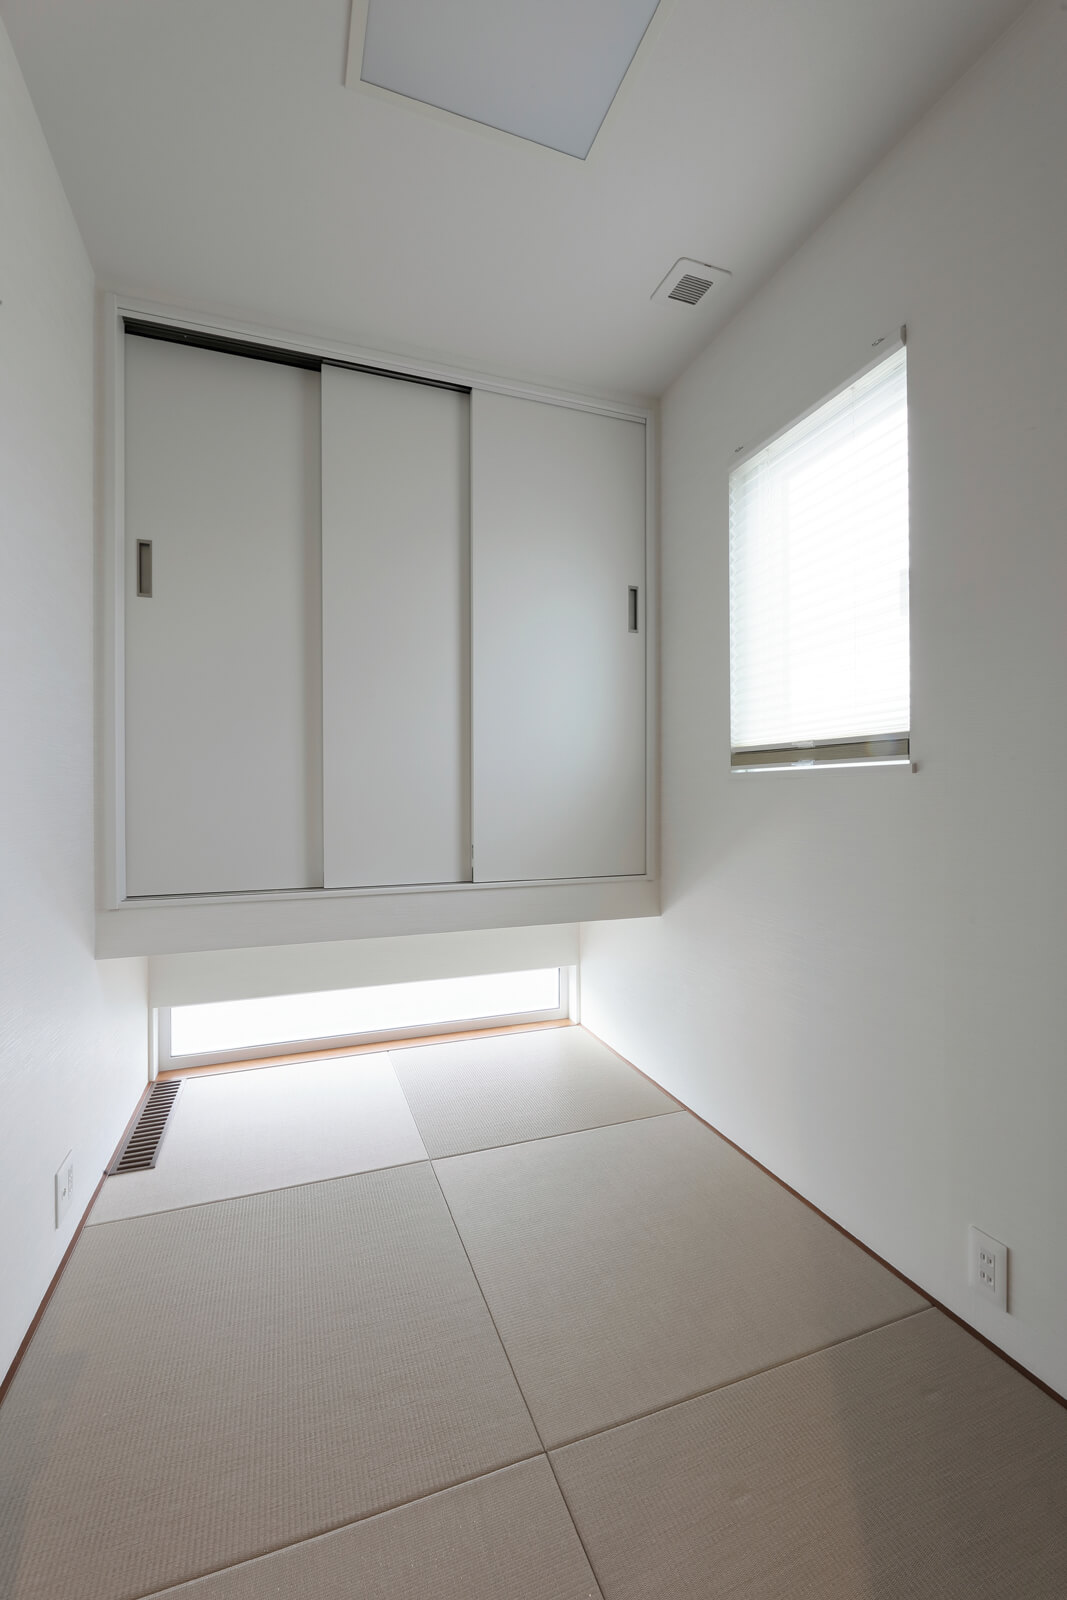 吊り押し入れを造作したコンパクトな3帖の和室。客間にも最適なこもり感のある空間